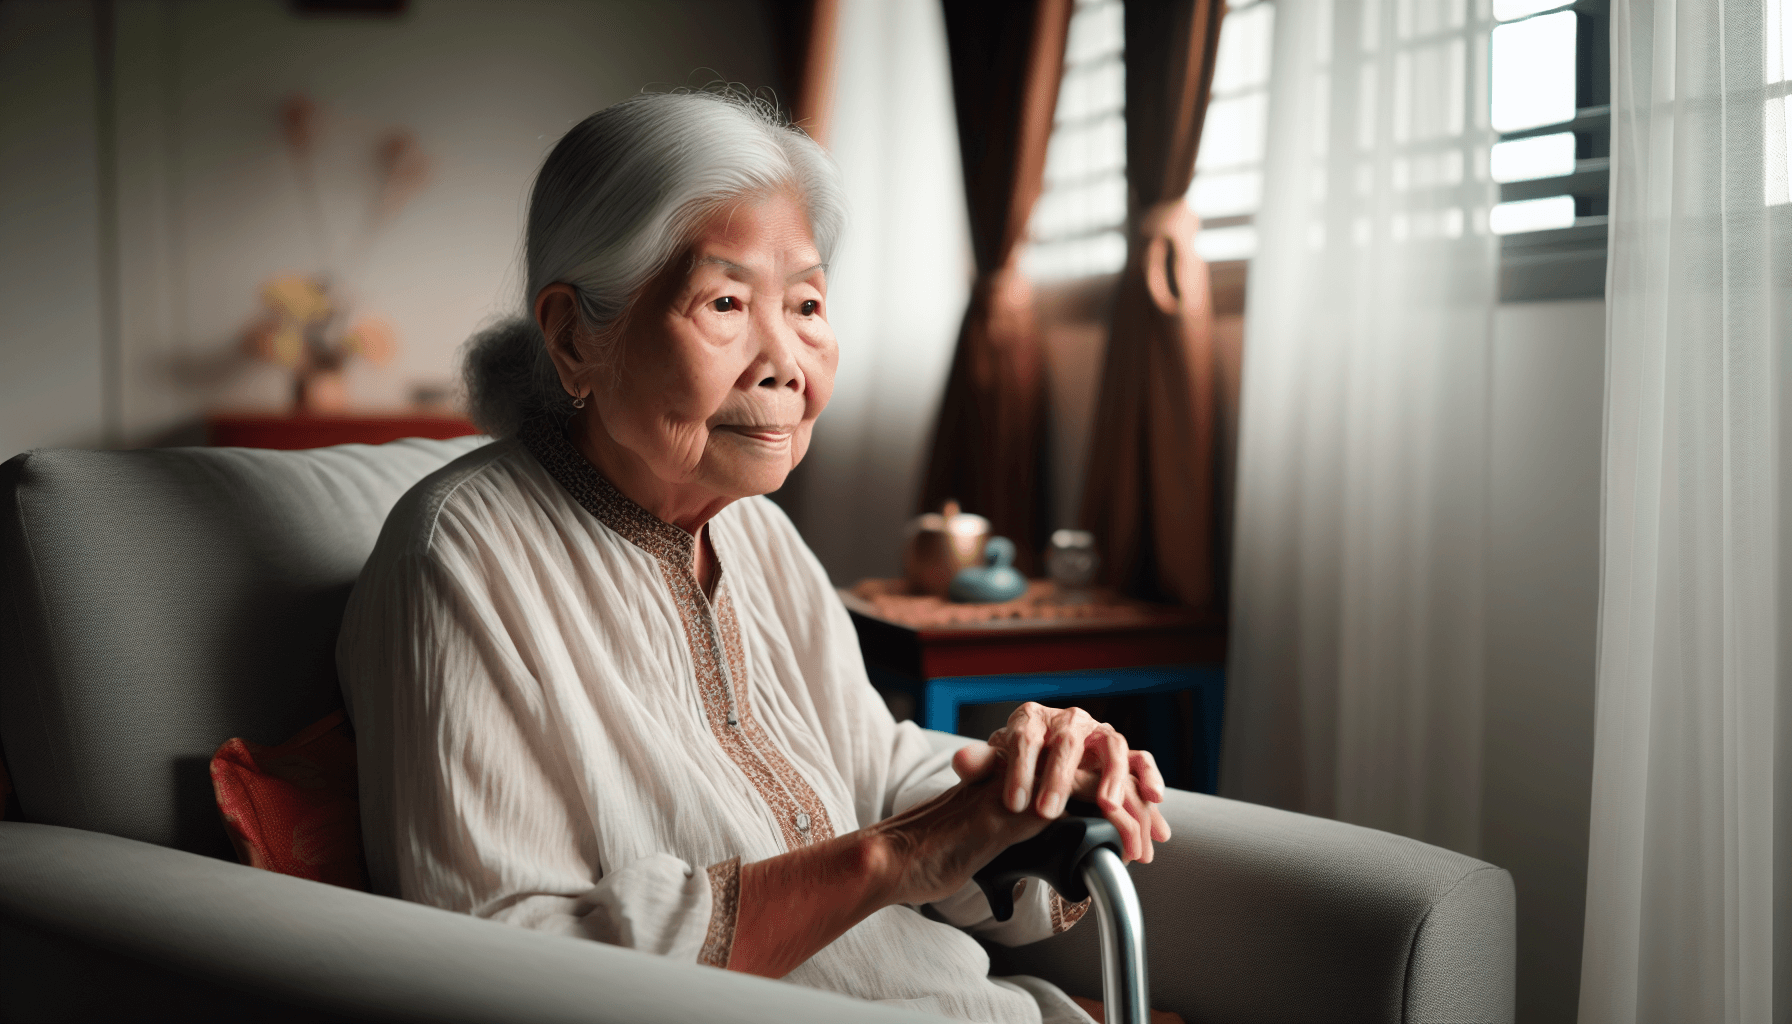 Atriyal fibrilasyon komplikasyonları için yaşı bir risk faktörü olarak temsil eden yaşlı kişinin fotoğrafı